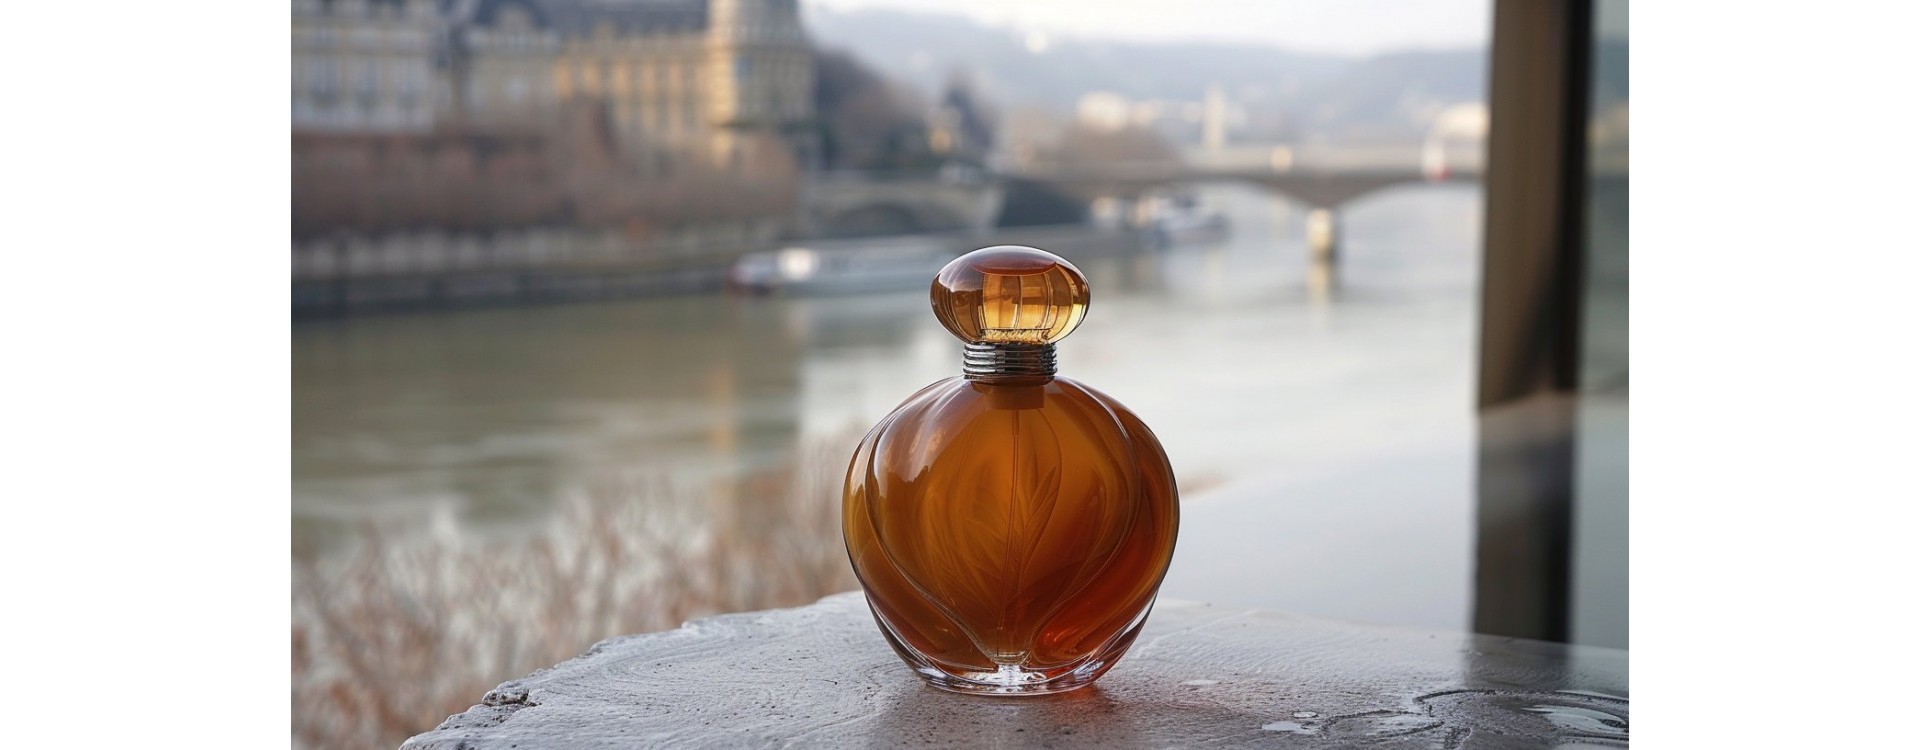 Le parfum préféré des Françaises : entre tradition et modernité